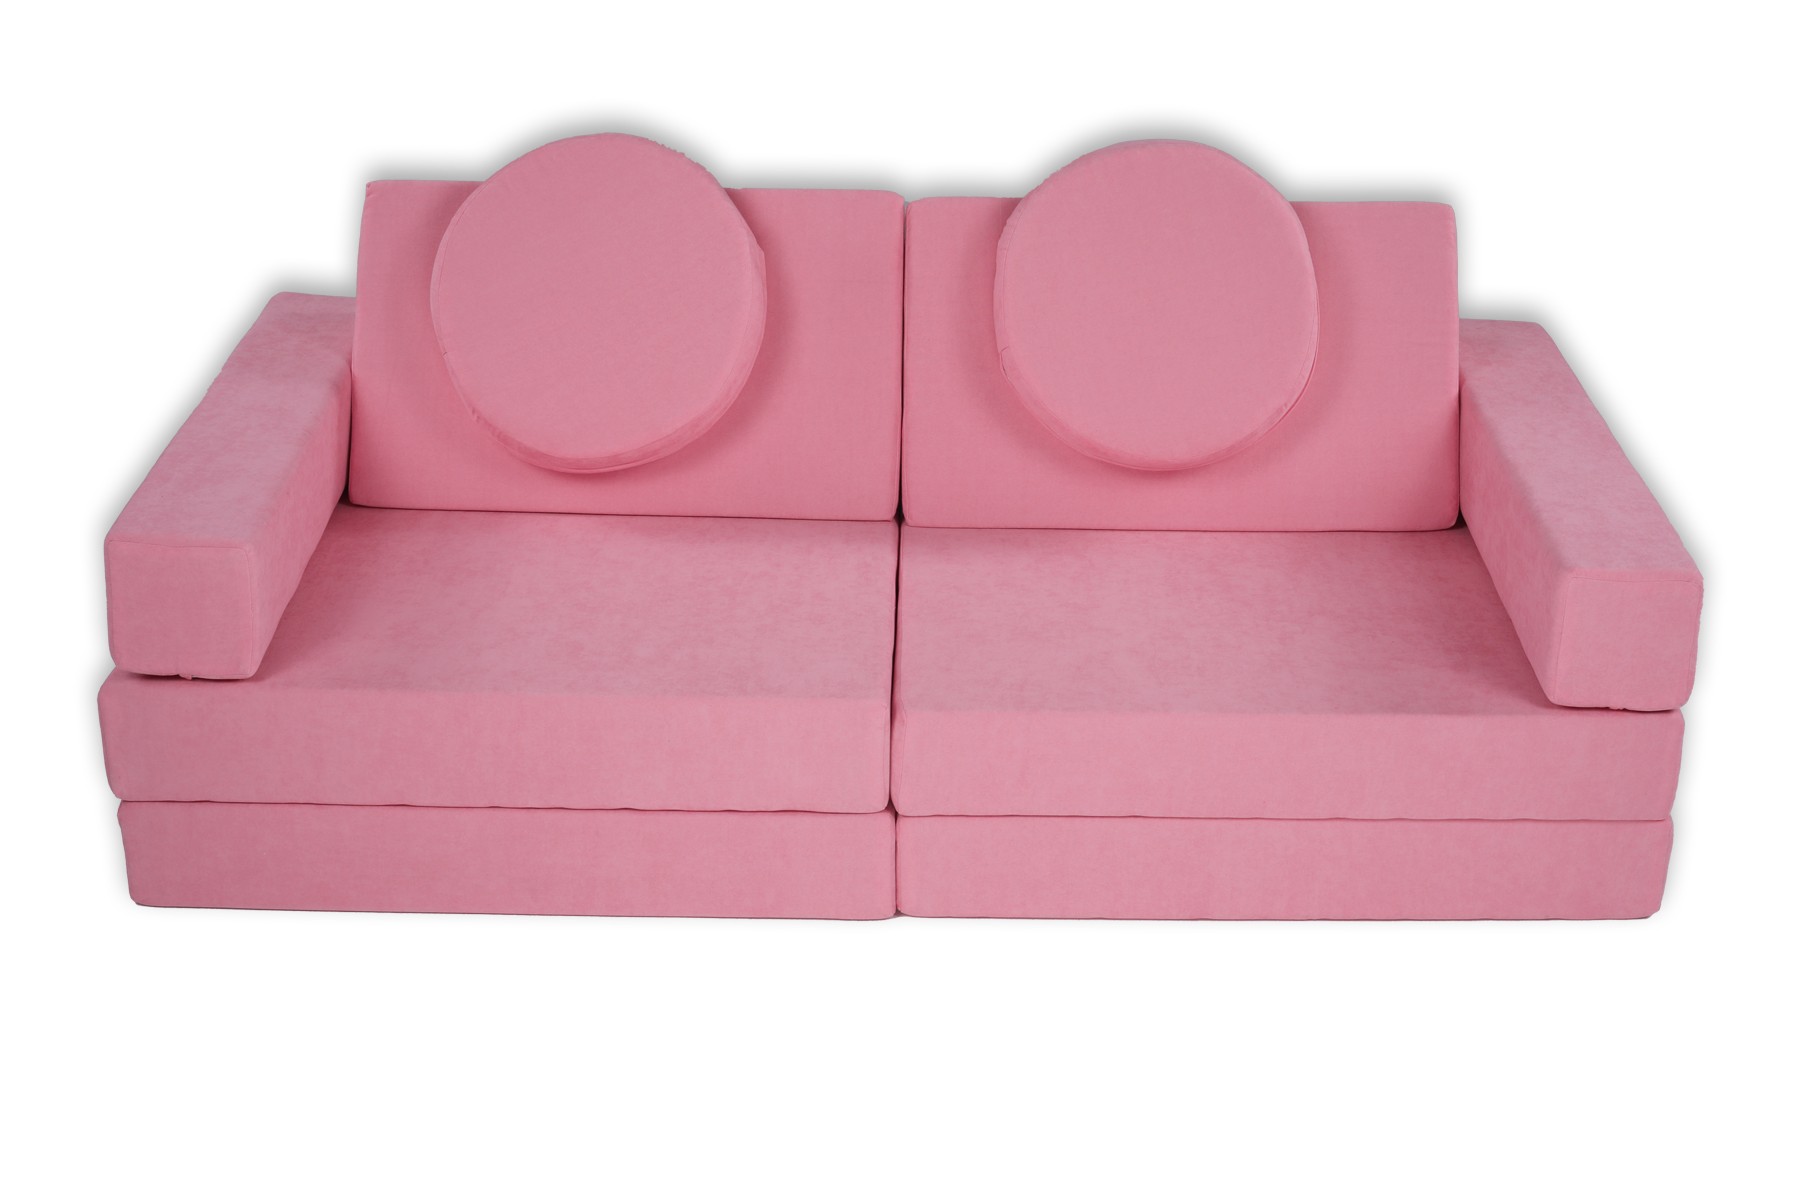 10 Pieces Pink Puzzle Sponge